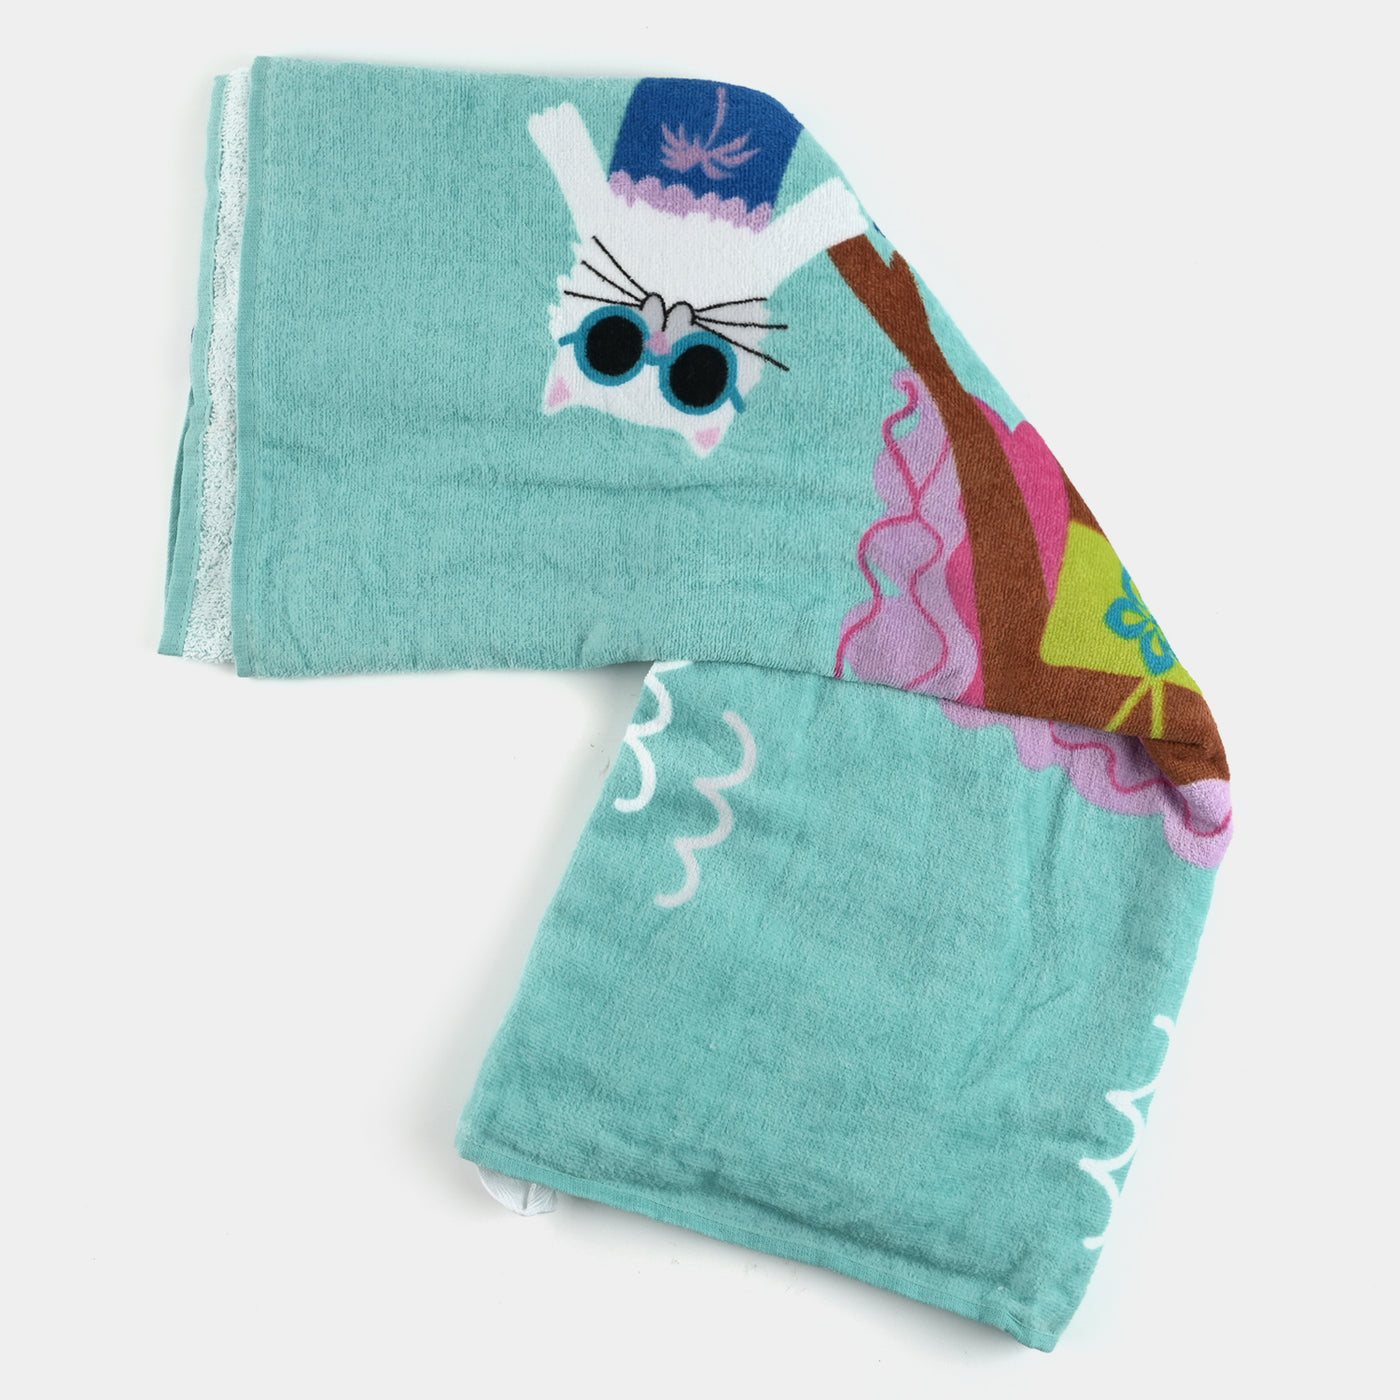 Printed Bath Towel | Towel Mermaid